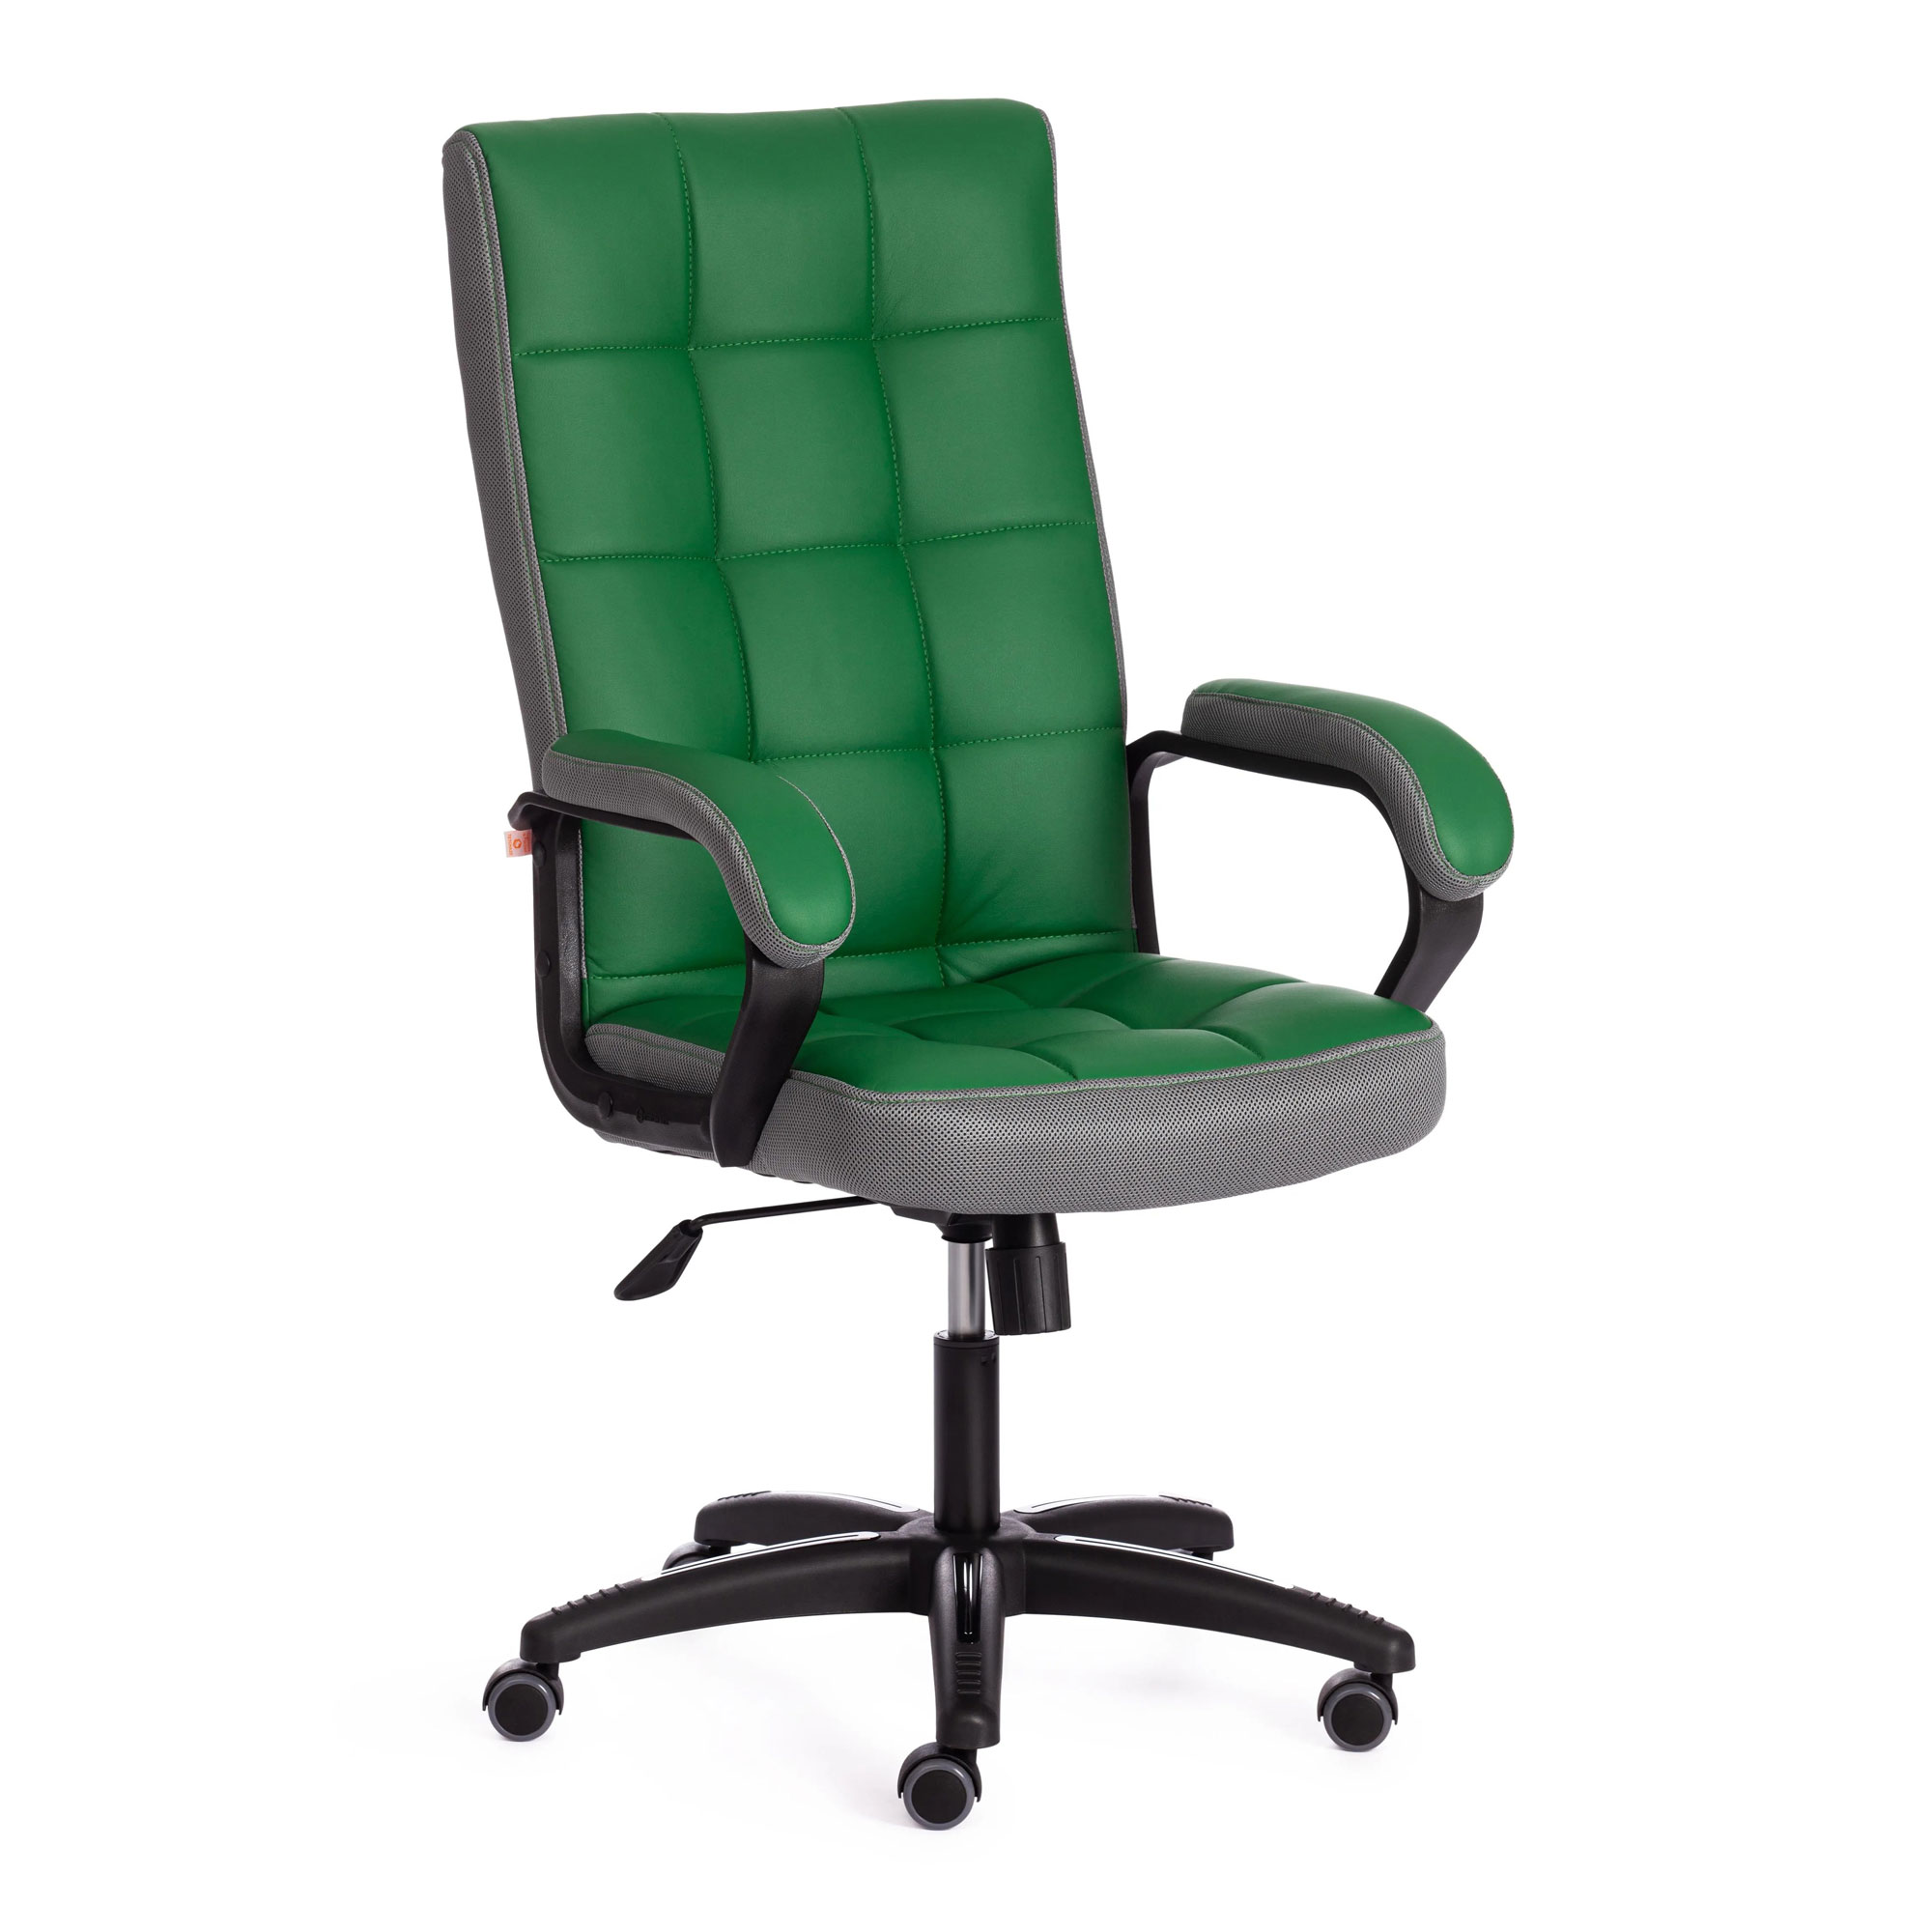 Кресло компьютерное TC искусственная кожа зелёное с серым 61х47х126 см кресло компьютерное tc driver искусственная кожа чёрное с серым 55х49х126 см